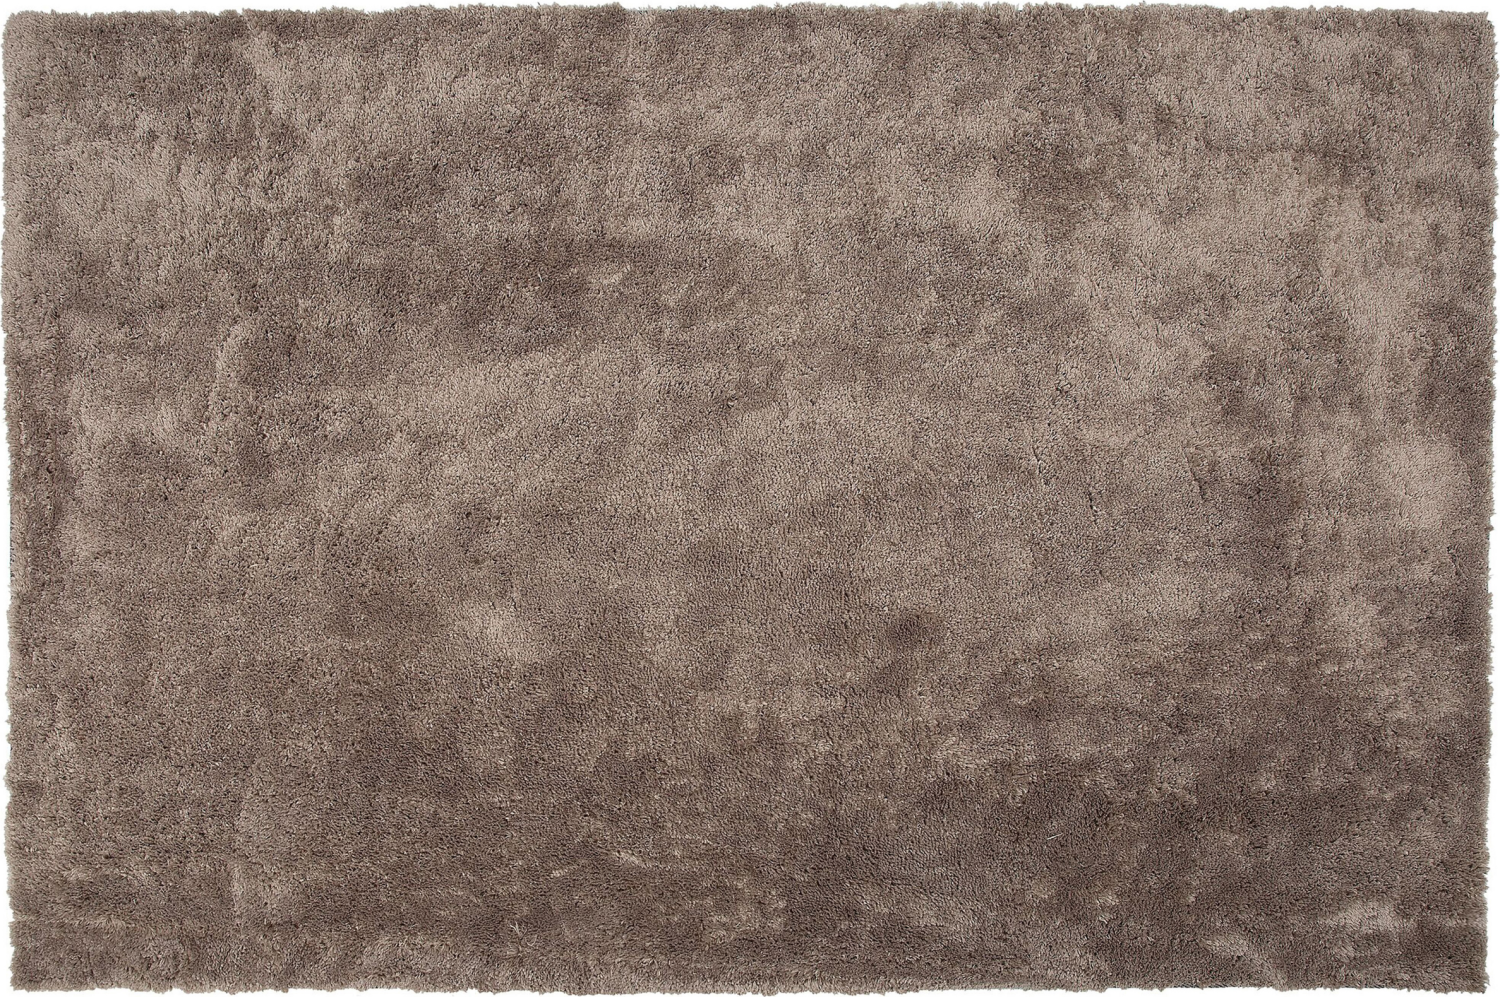 Teppich hellbraun 140 x 200 cm Shaggy EVREN Bild 1